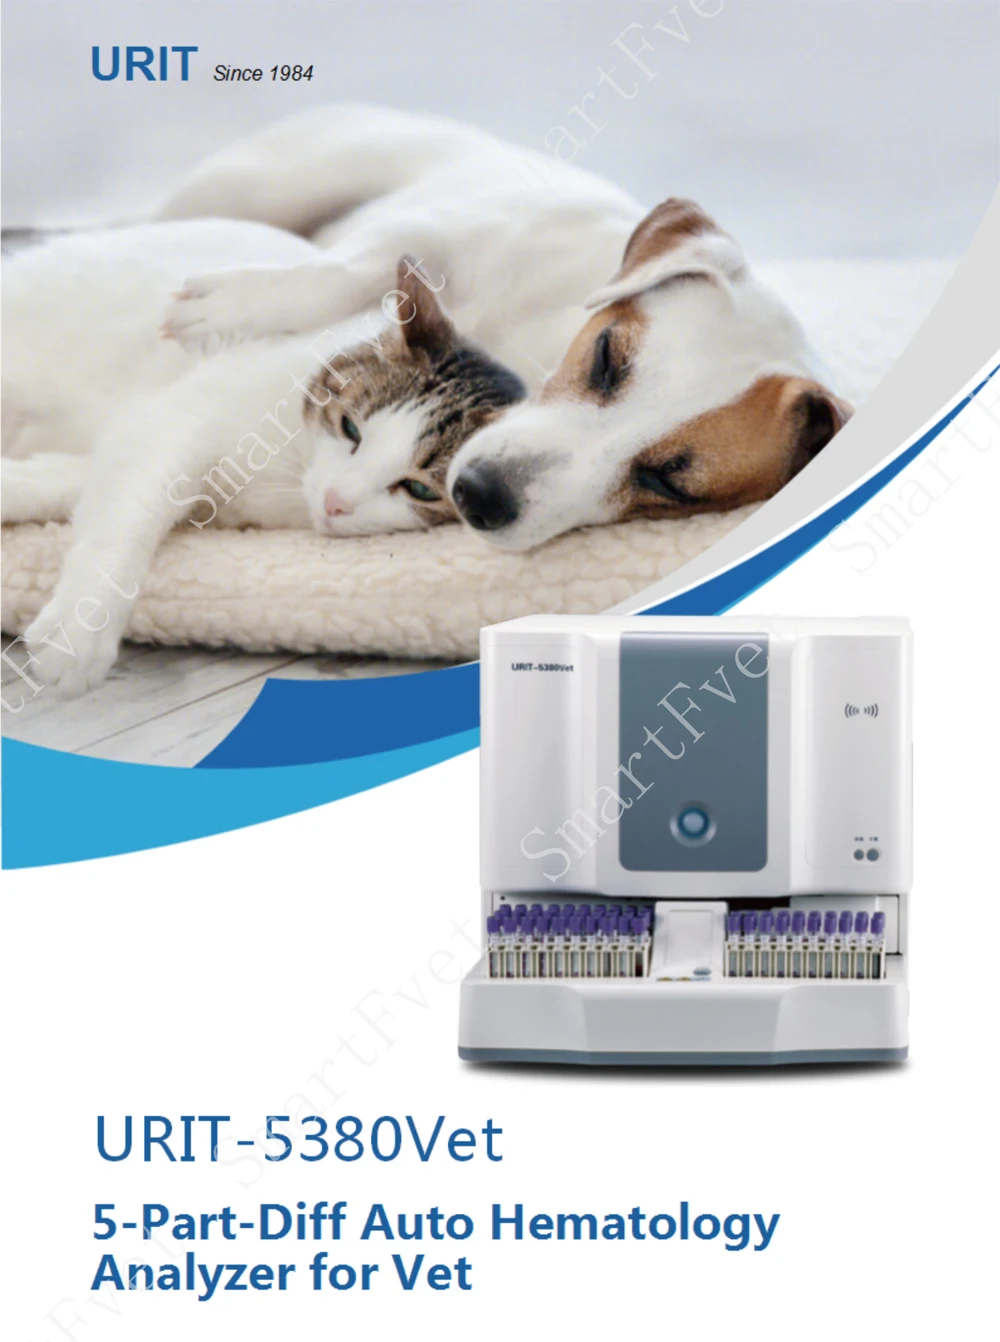 SmartFvet 5-Компонентный автоанализатор для ветеринарного микроанализатора для сбора крови